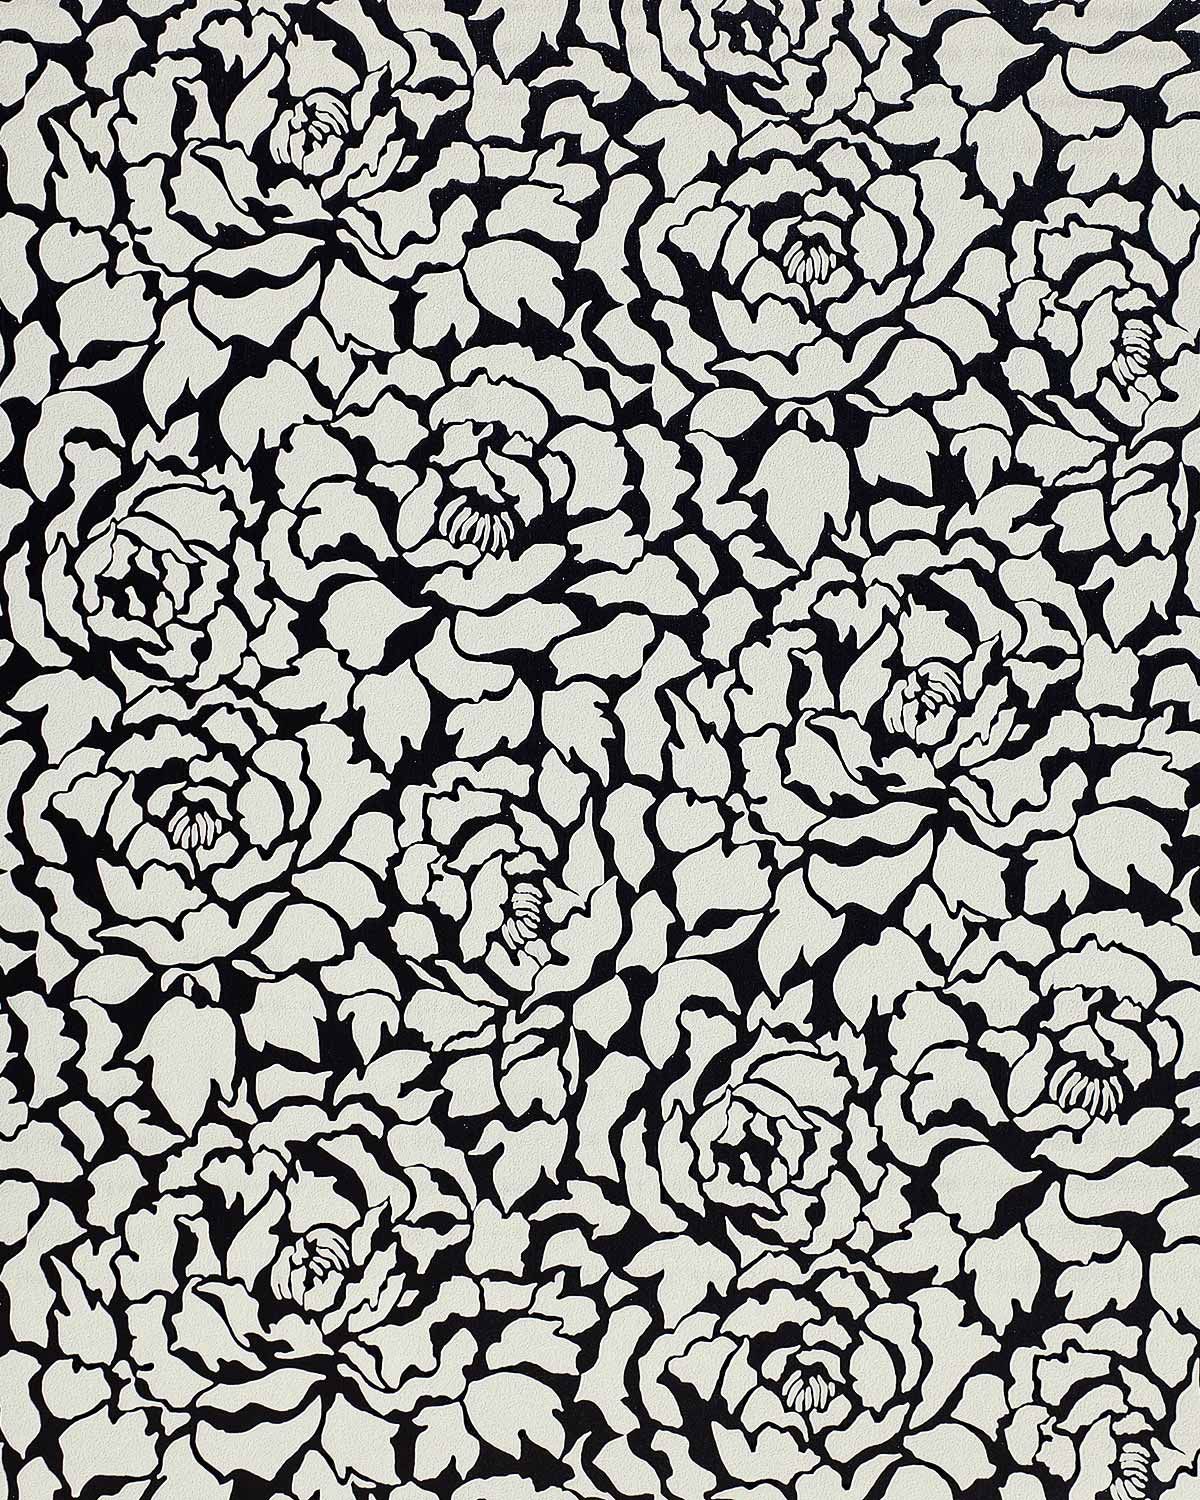 Deluxe Deep Embossed Luxury Wallpaper Peony Flowers - Black Floral Print Paper - HD Wallpaper 